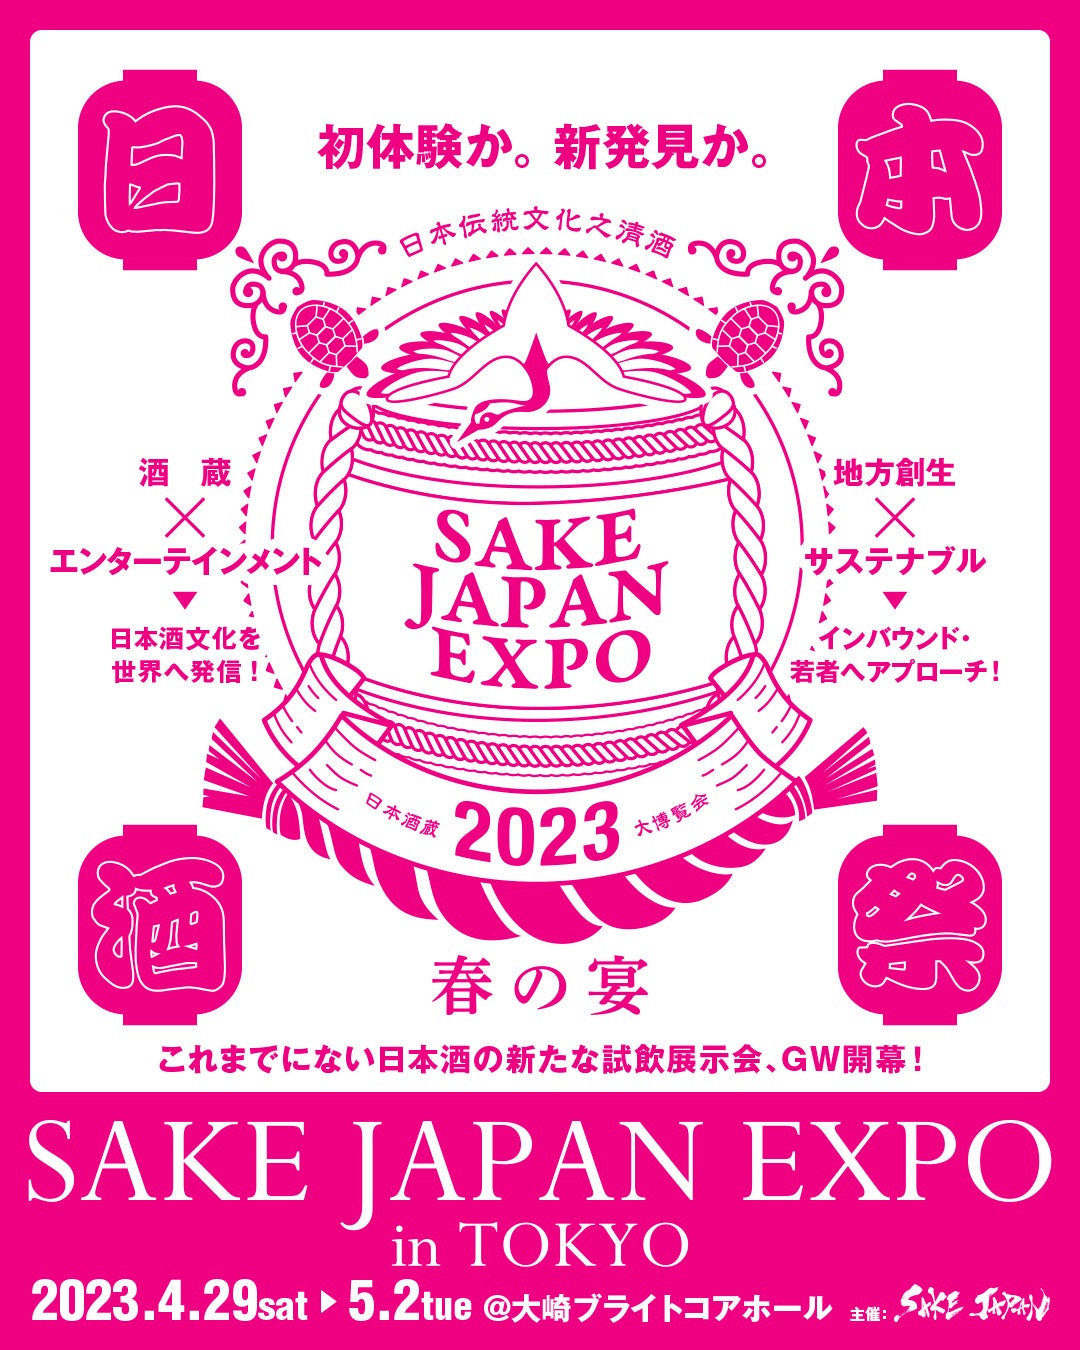 日本酒の試飲展示会「SAKE JAPAN EXPO in TOKYO 2023」 TIGETにてチケット販売